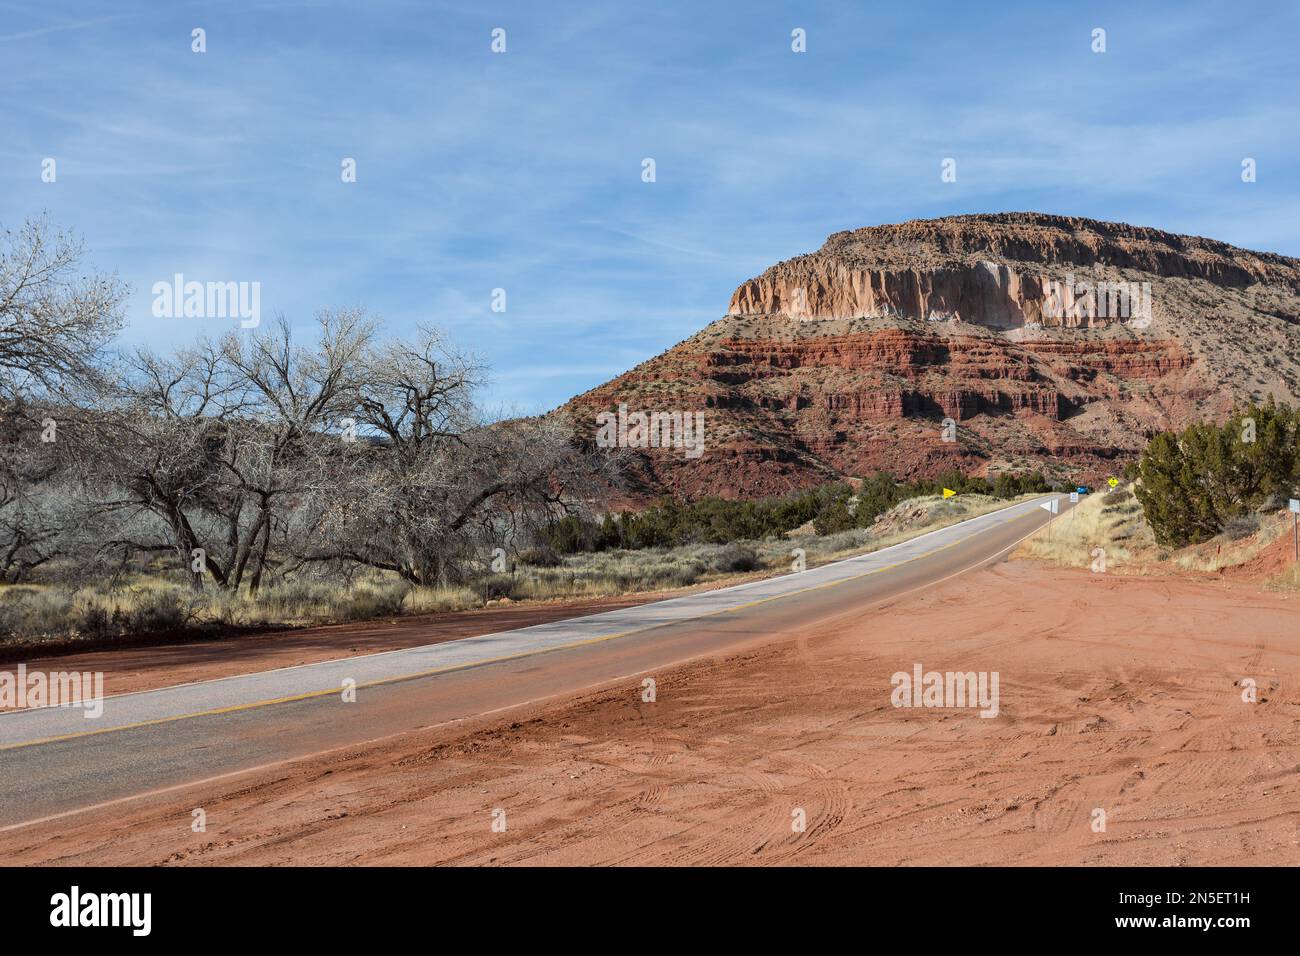 Strada che conduce alla catena montuosa nel deserto del New Mexico rurale in una giornata limpida Foto Stock